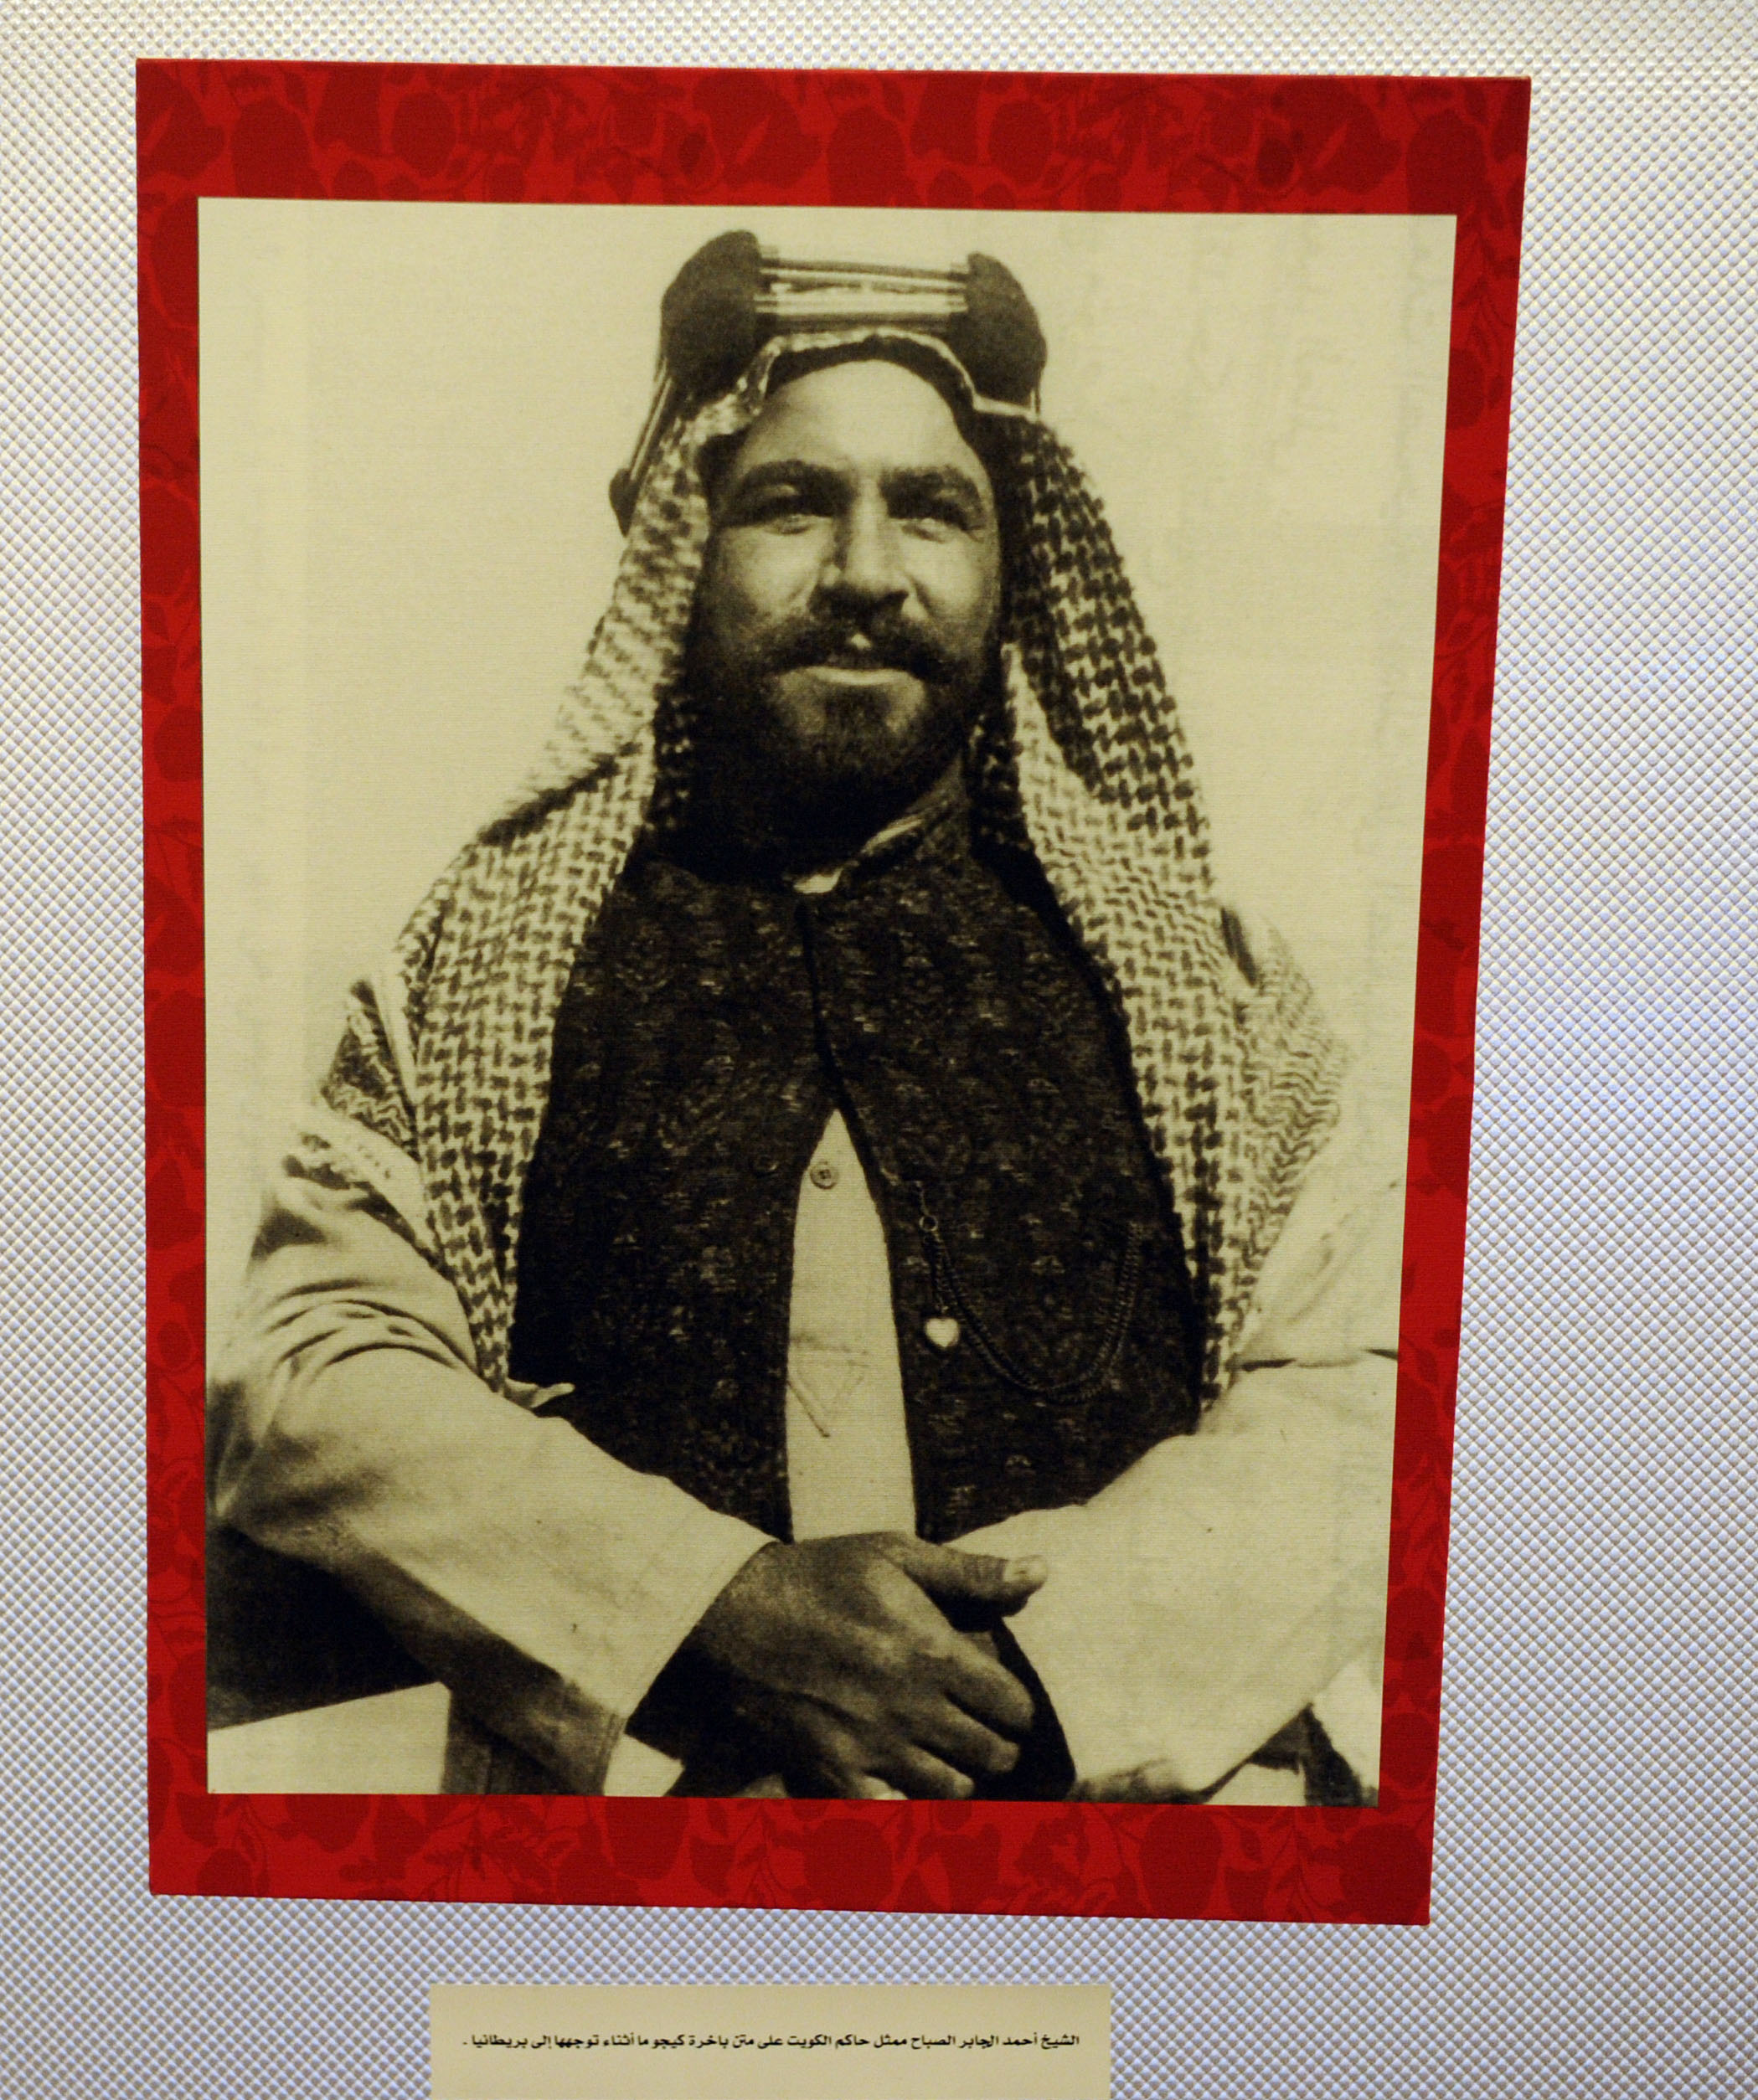 كونا معرض توثيقي كويتي يحتفي بمئوية زيارة الشيخ أحمد الجابر لبريطانيا الثقافة والفنون والآداب 28 11 2019